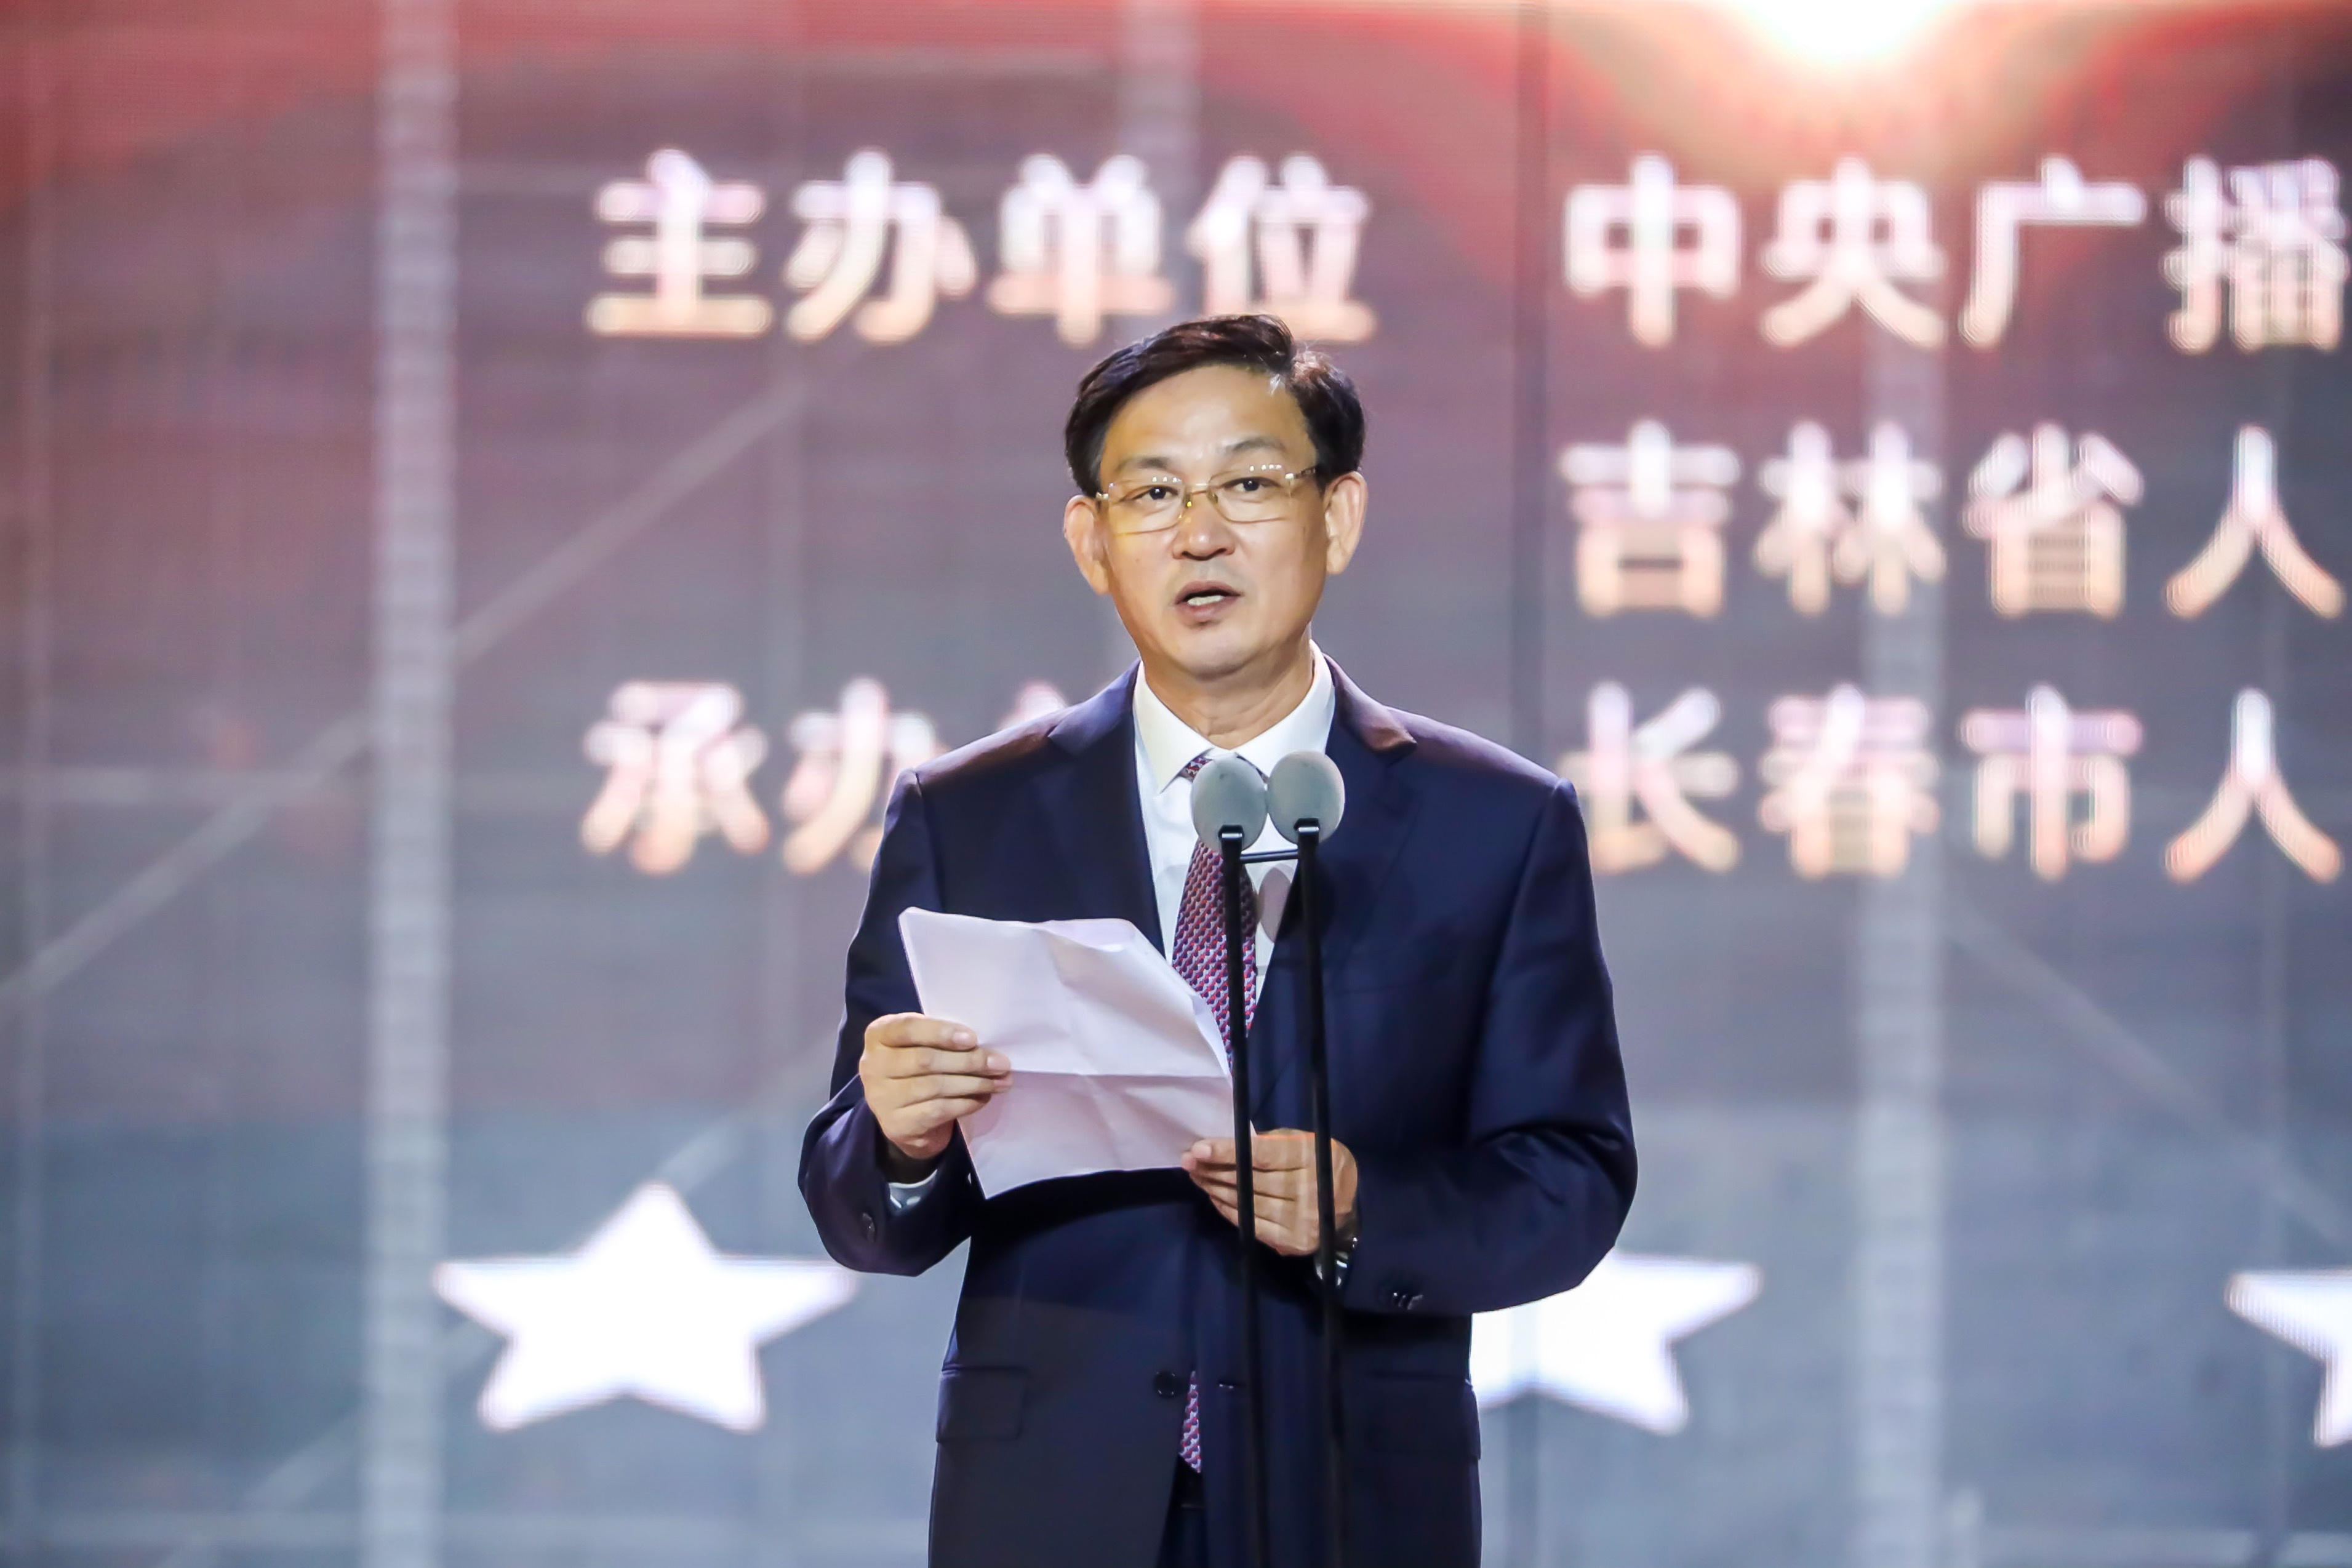 第十五届中国长春电影节正式启动 评委会集体亮相